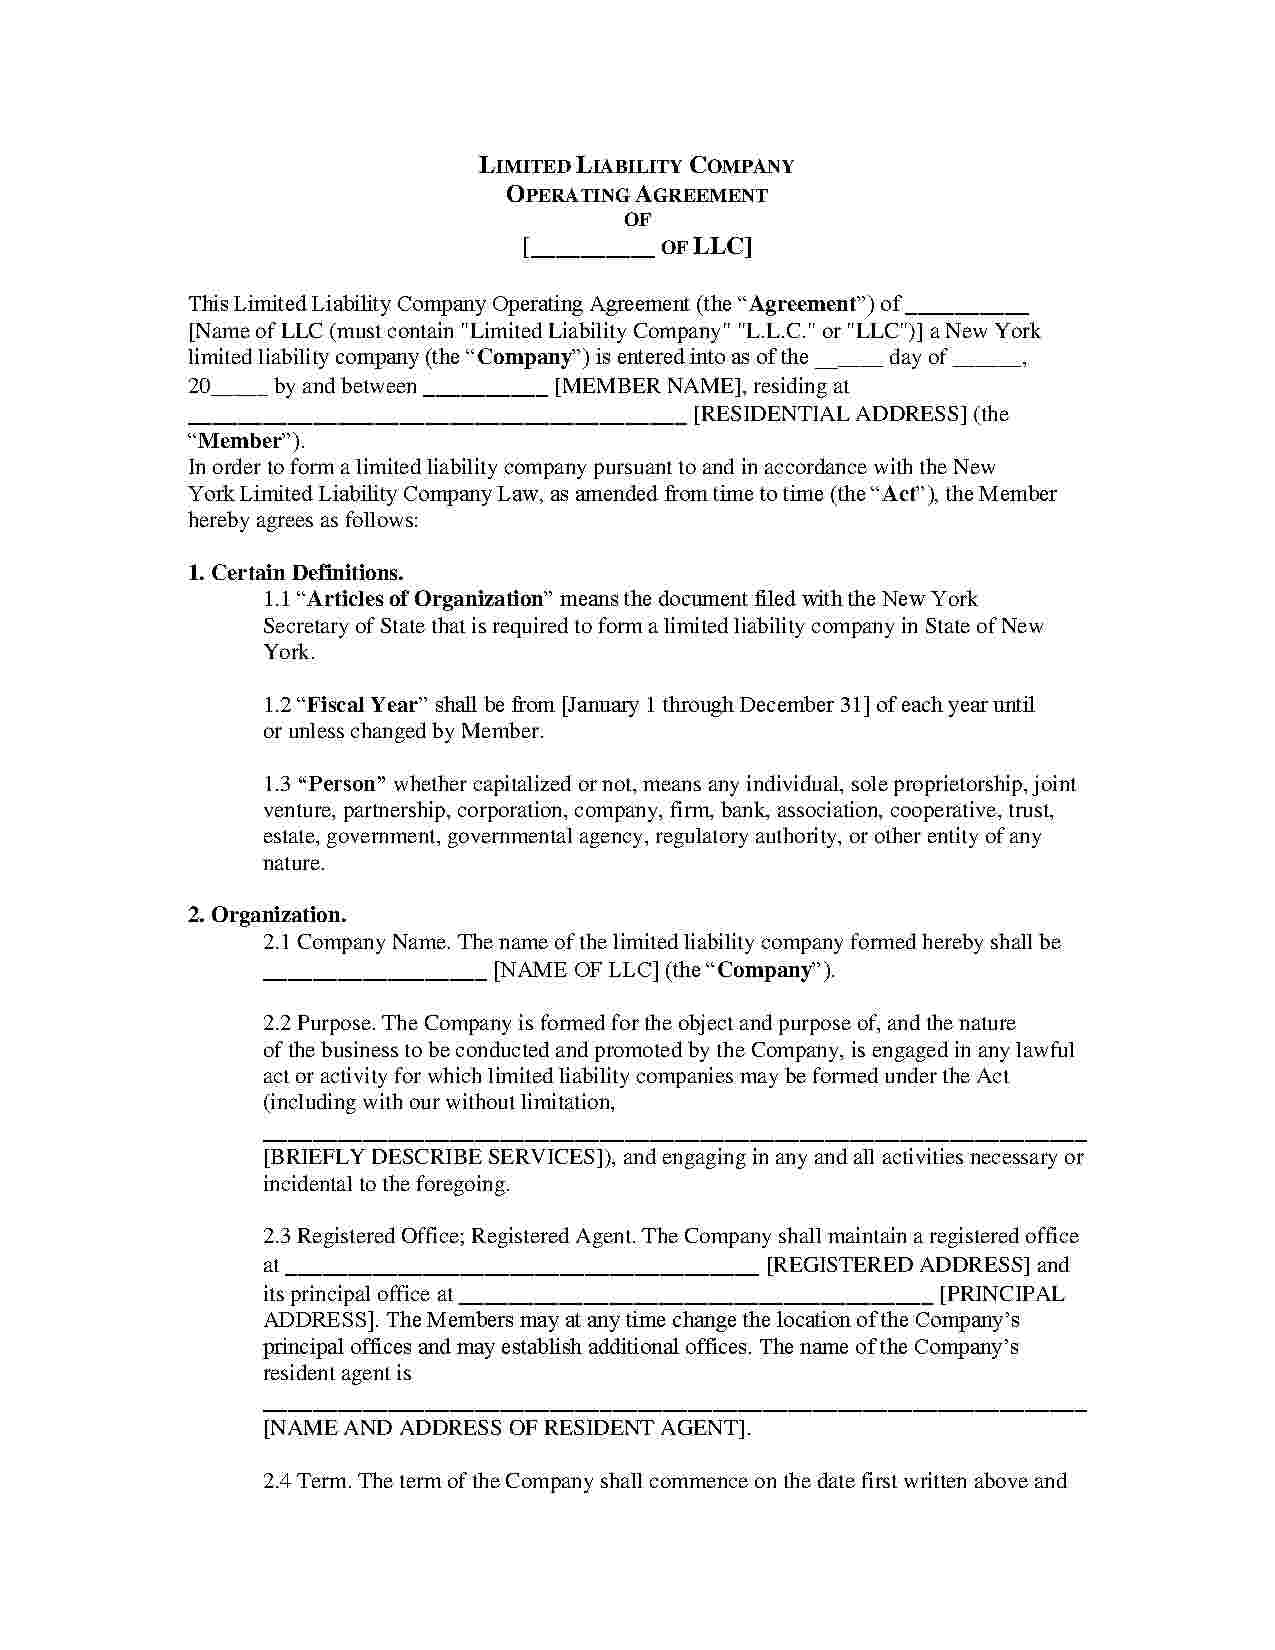 Llc No Operating Agreement Download Amendment To Llc Operating Agreement Style 10 Template For